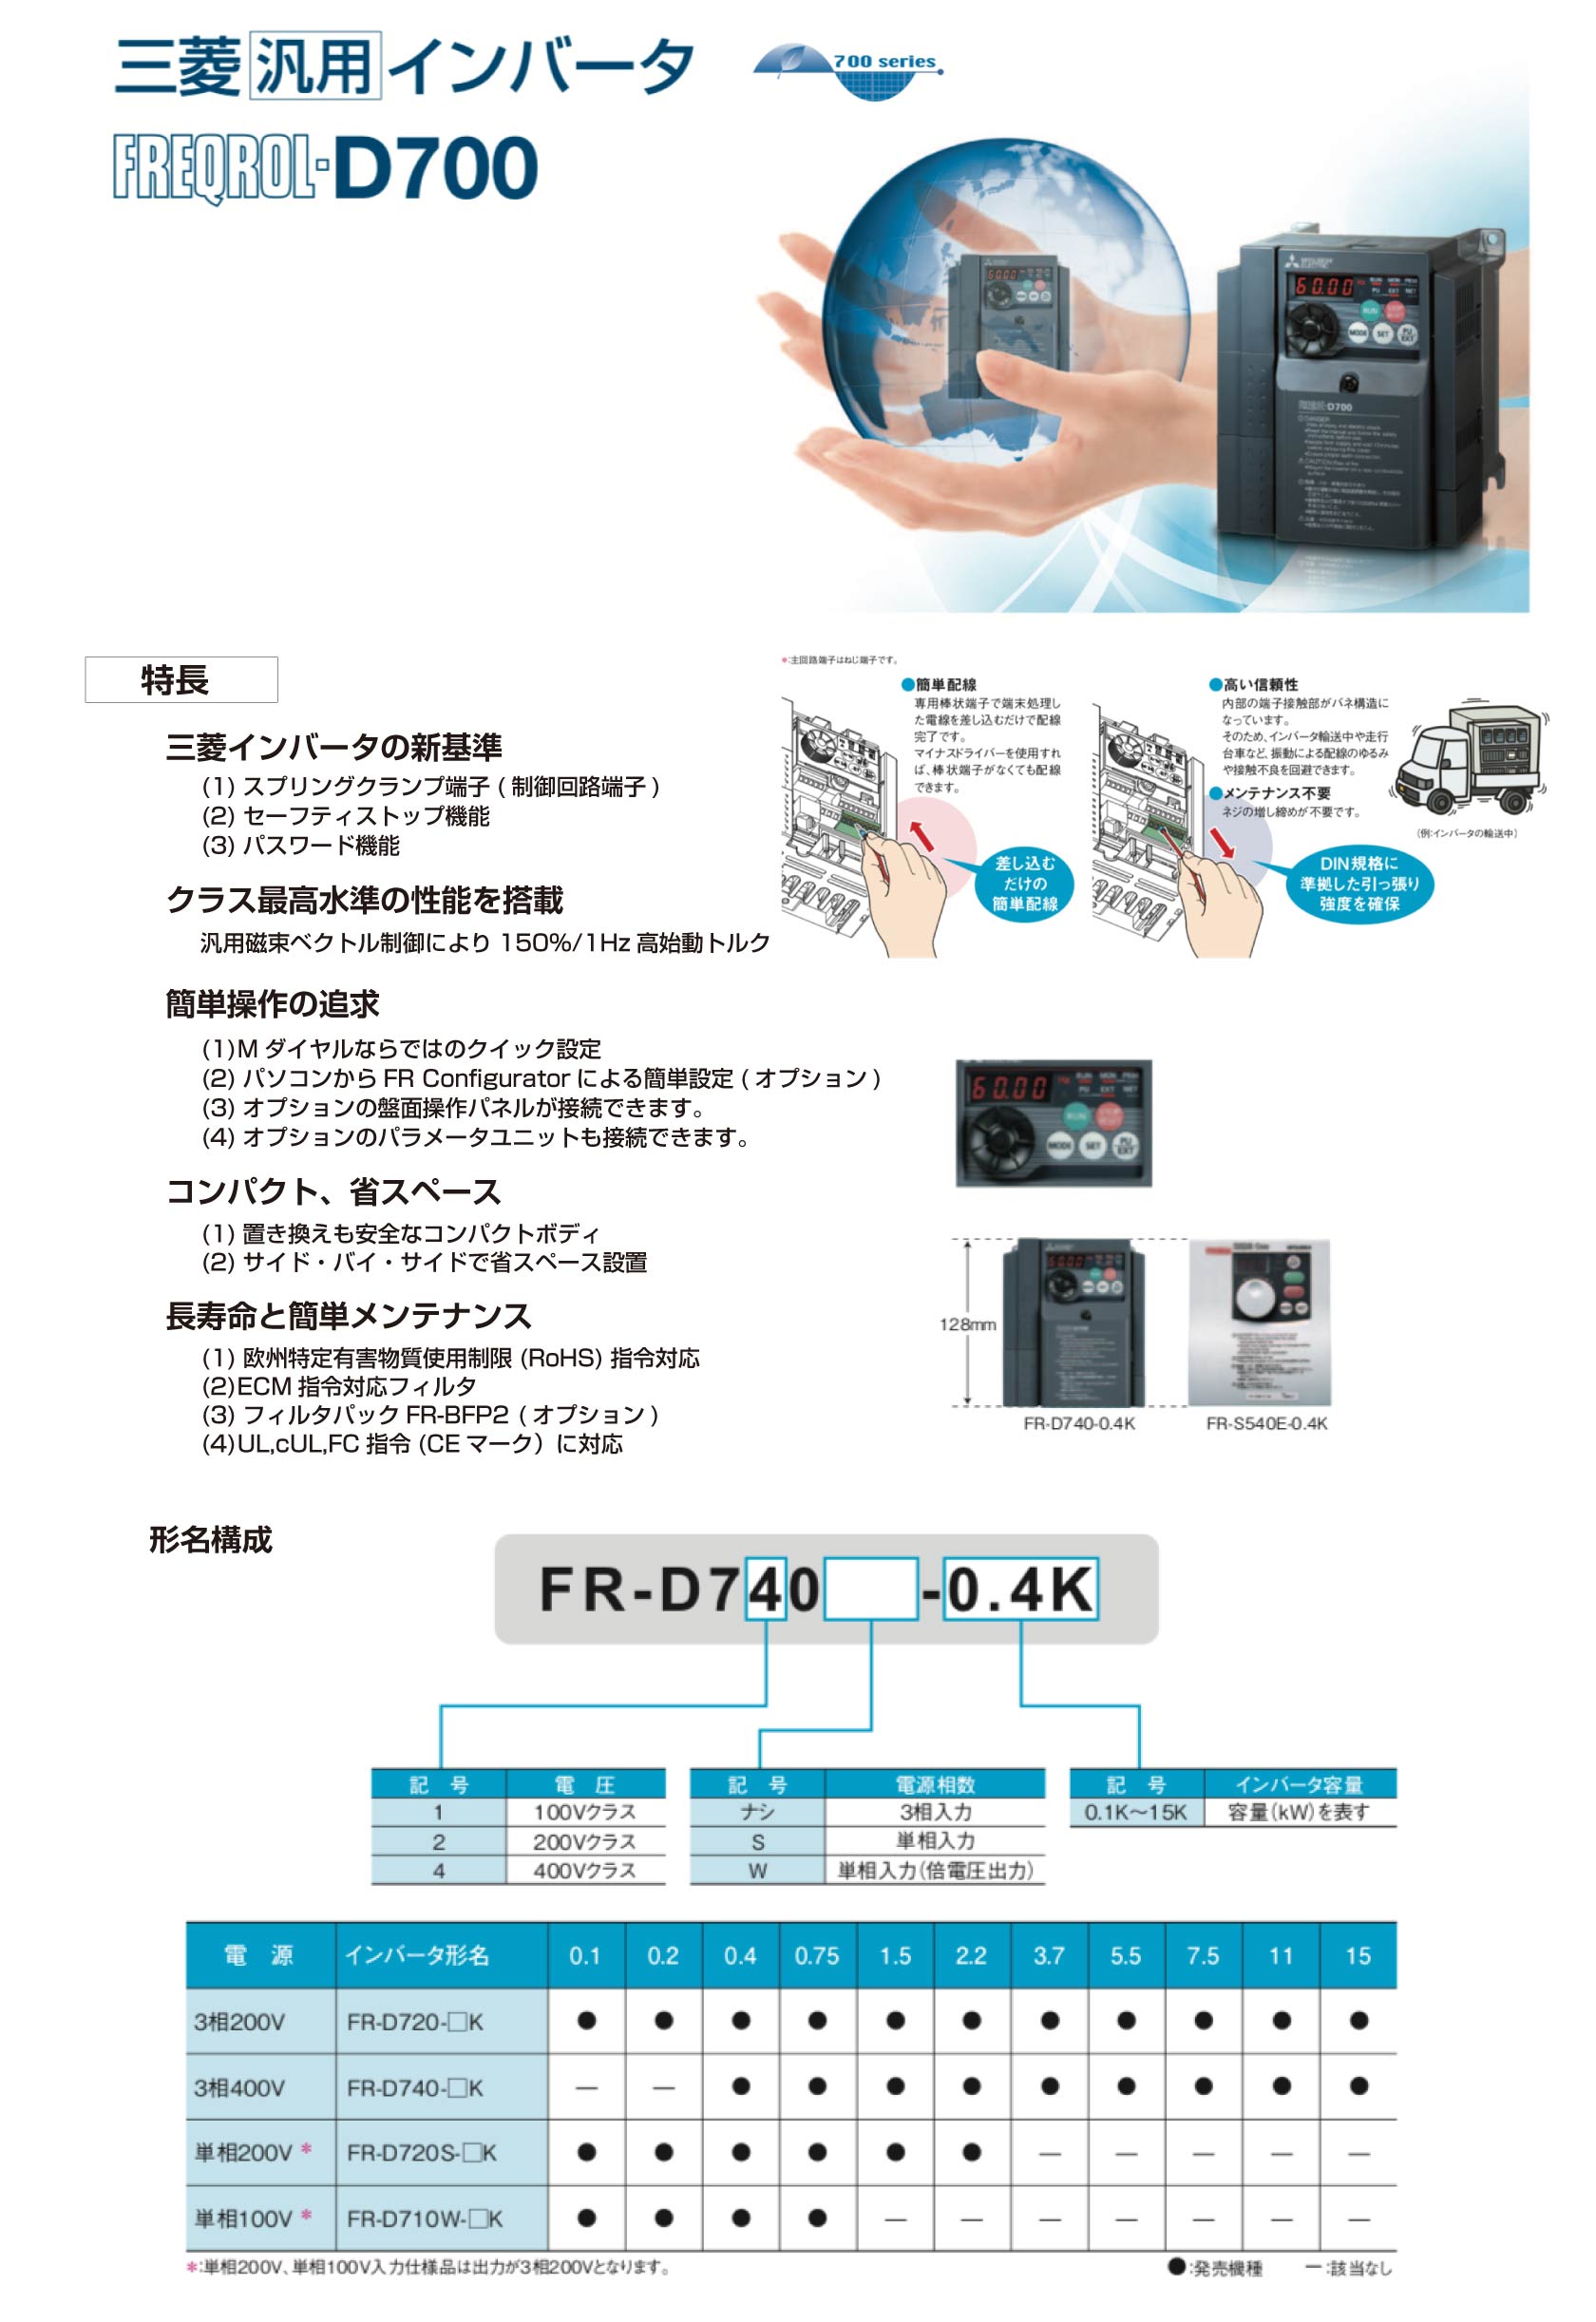 汎用 簡単?小形インバータ FREQROL-D700シリーズ 三相200V (FR-D720-3.7K) - 3